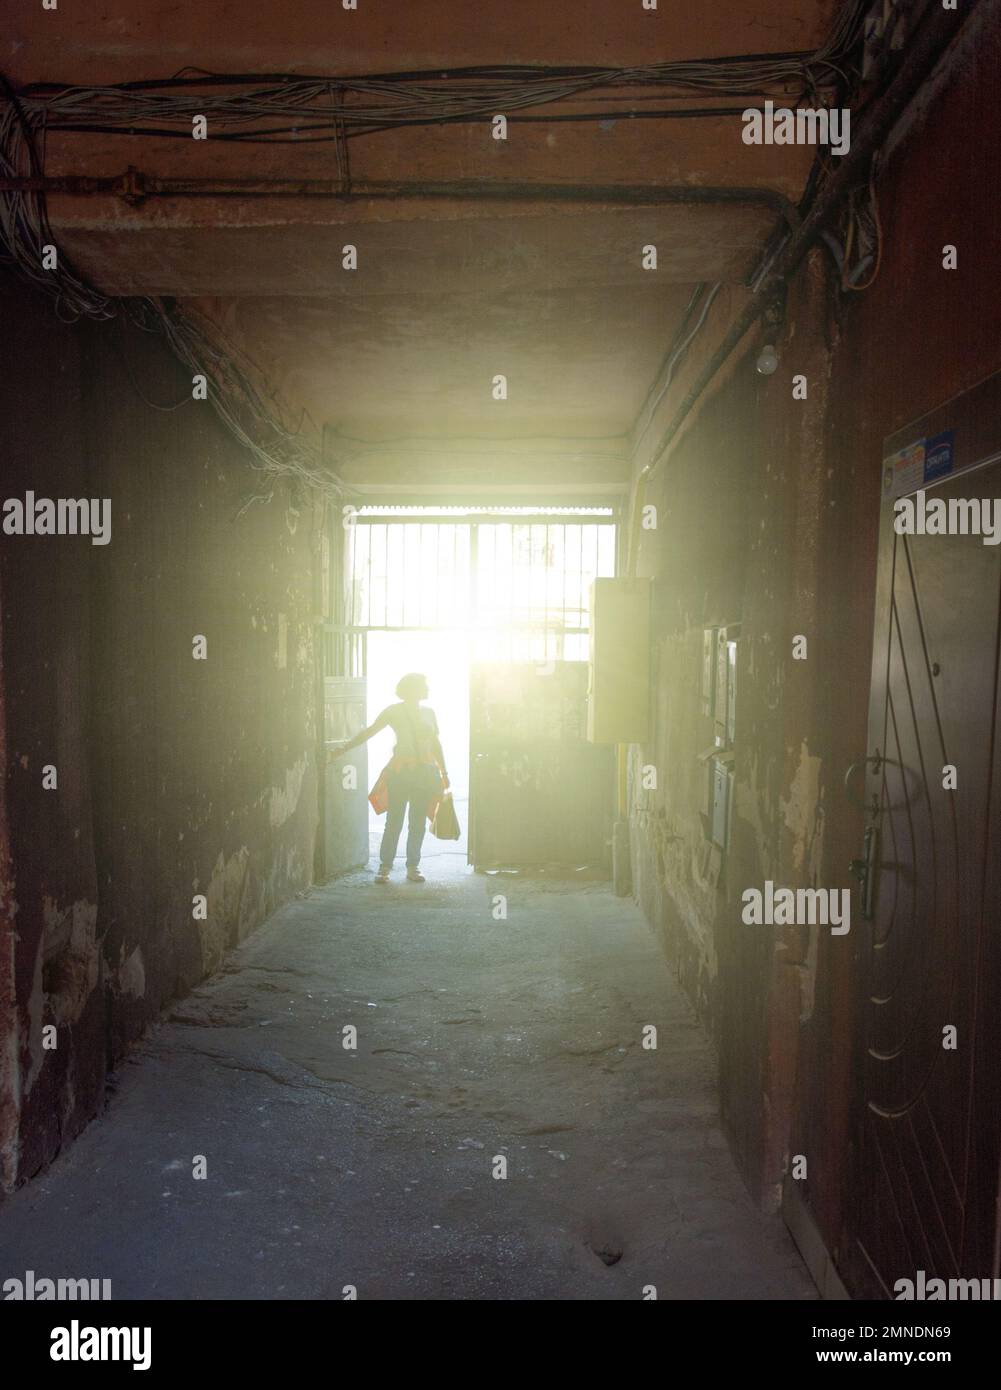 Weibliche Silhouette am Ende eines düsteren Korridors Stockfoto